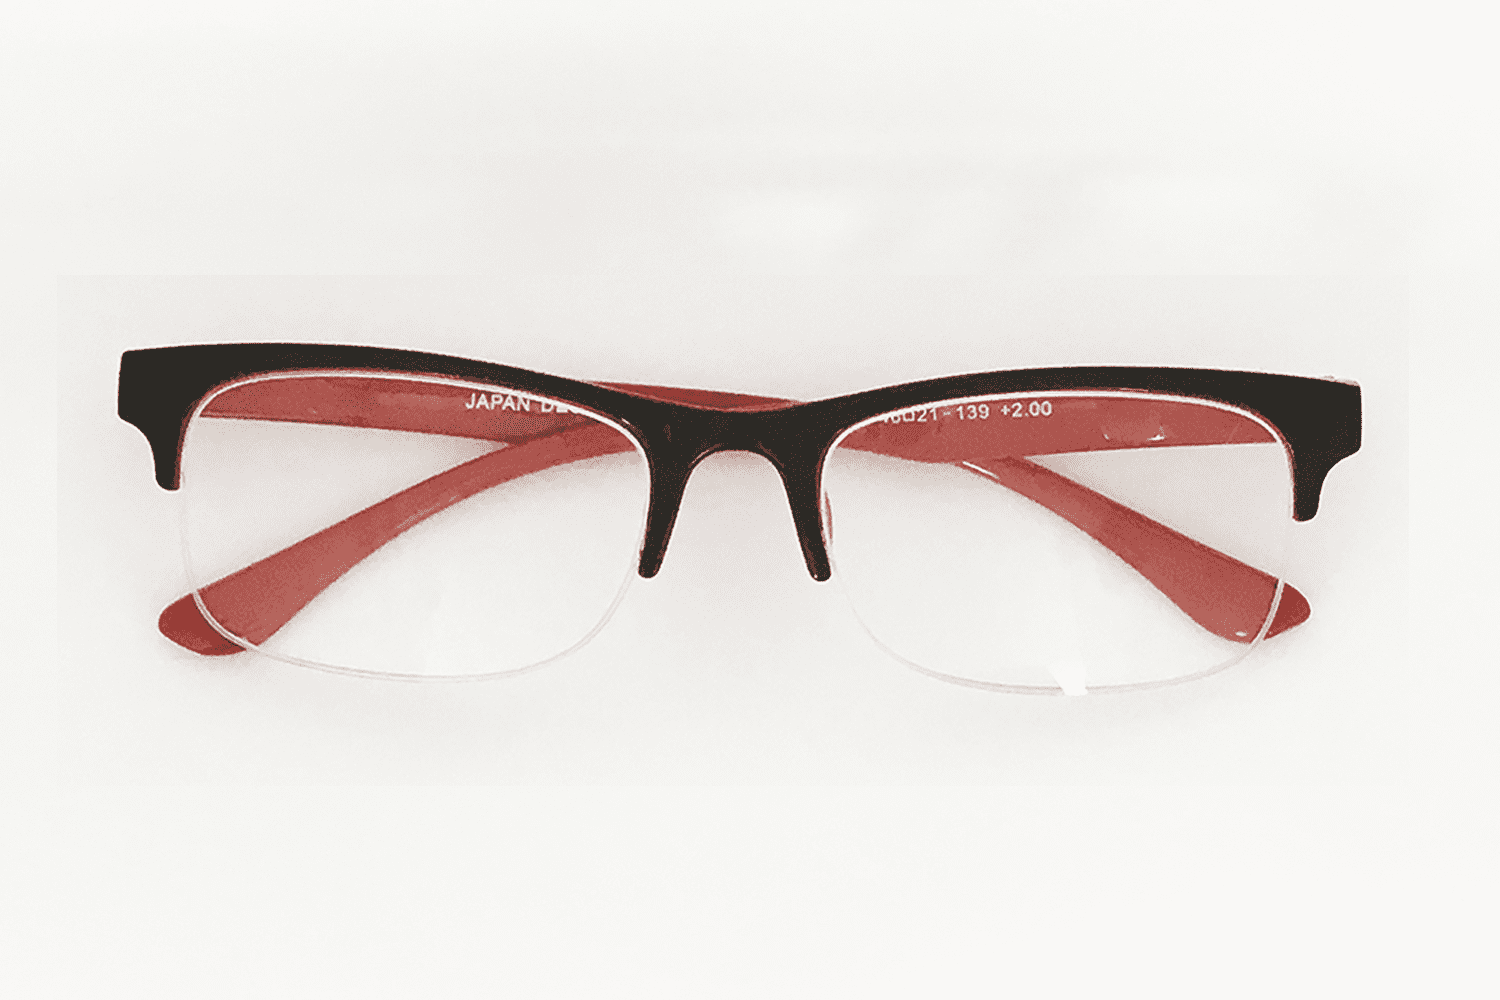 お洒落なリーディンググラス ハーフリム 老眼鏡 リーディンググラス おしゃれ レディース メンズ ハーフリム型 拡大鏡 カラフル 度数 2021新作 最安値級価格 アクセサリー 若者向け 老眼鏡に見えない 視力回復